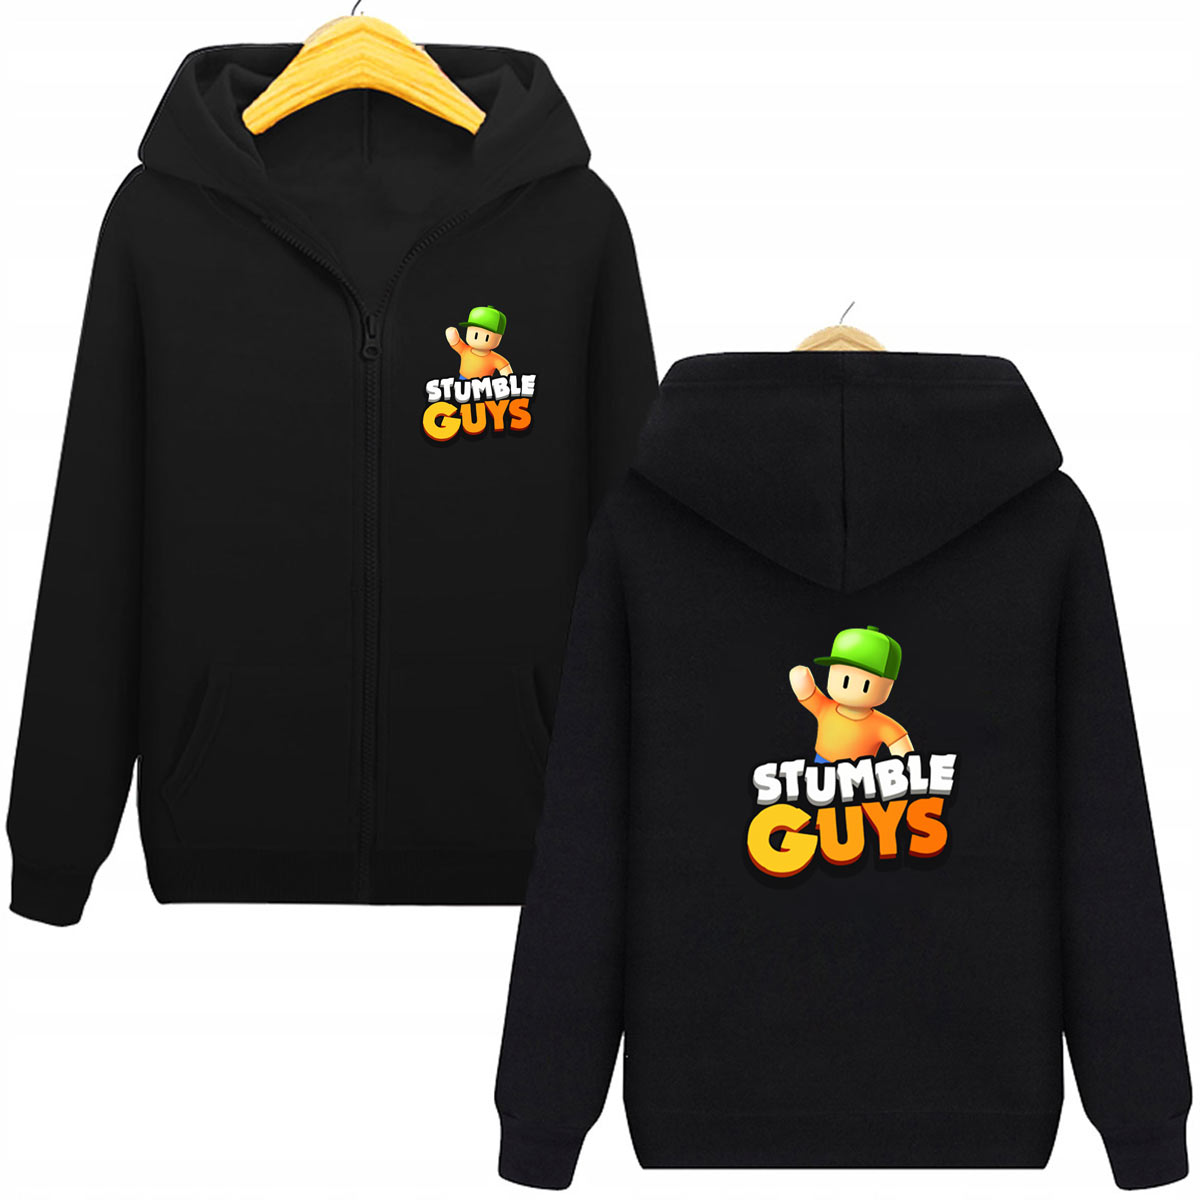 Stumble Guys bluza dla dzieci rozpinana z kapturem czarna